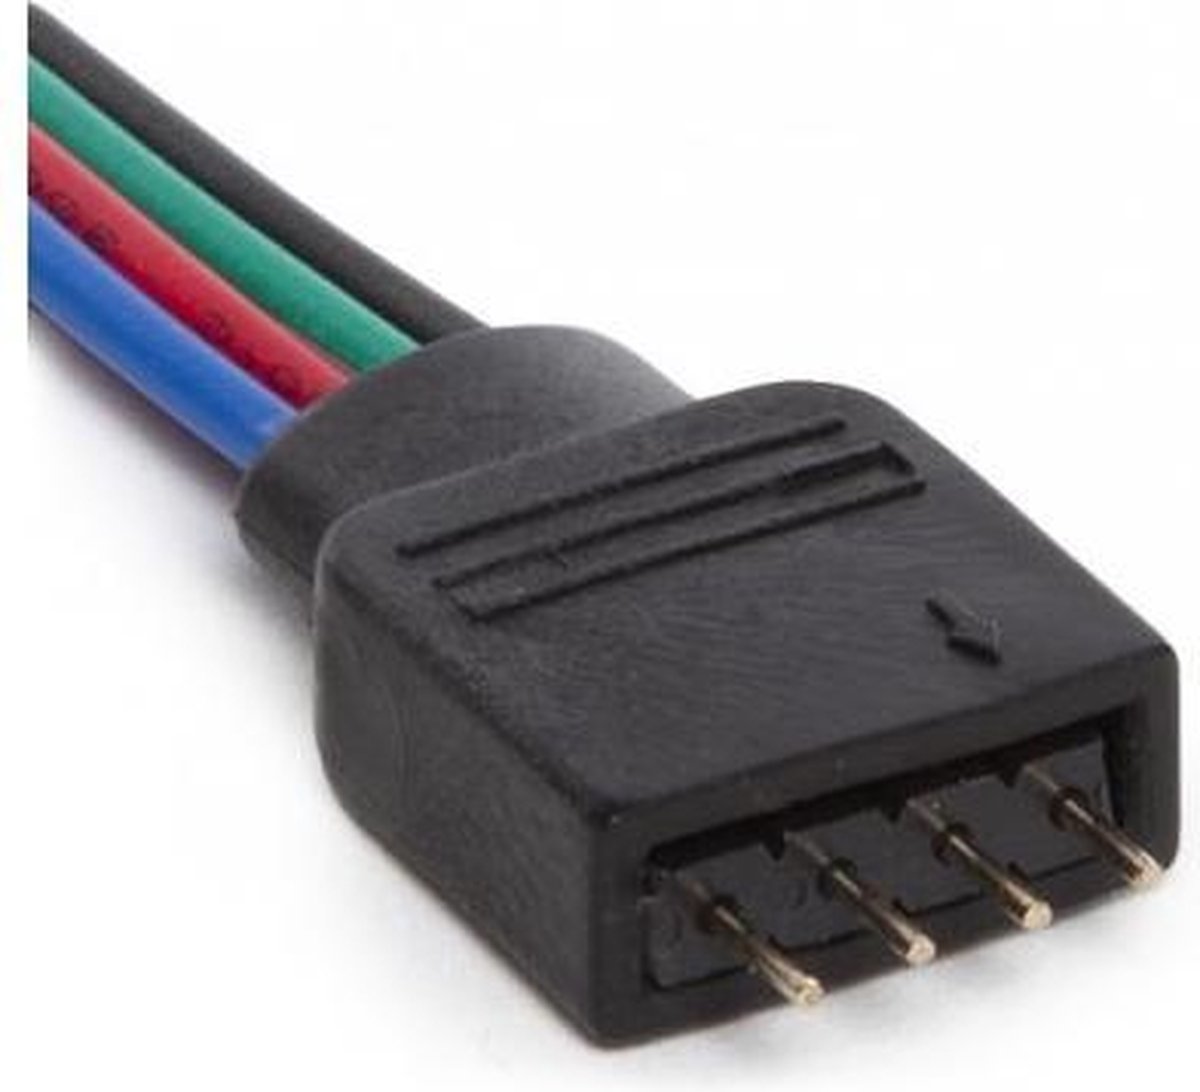 Koppelstuk met kabel voor RGBW ledstrip naar controller, male